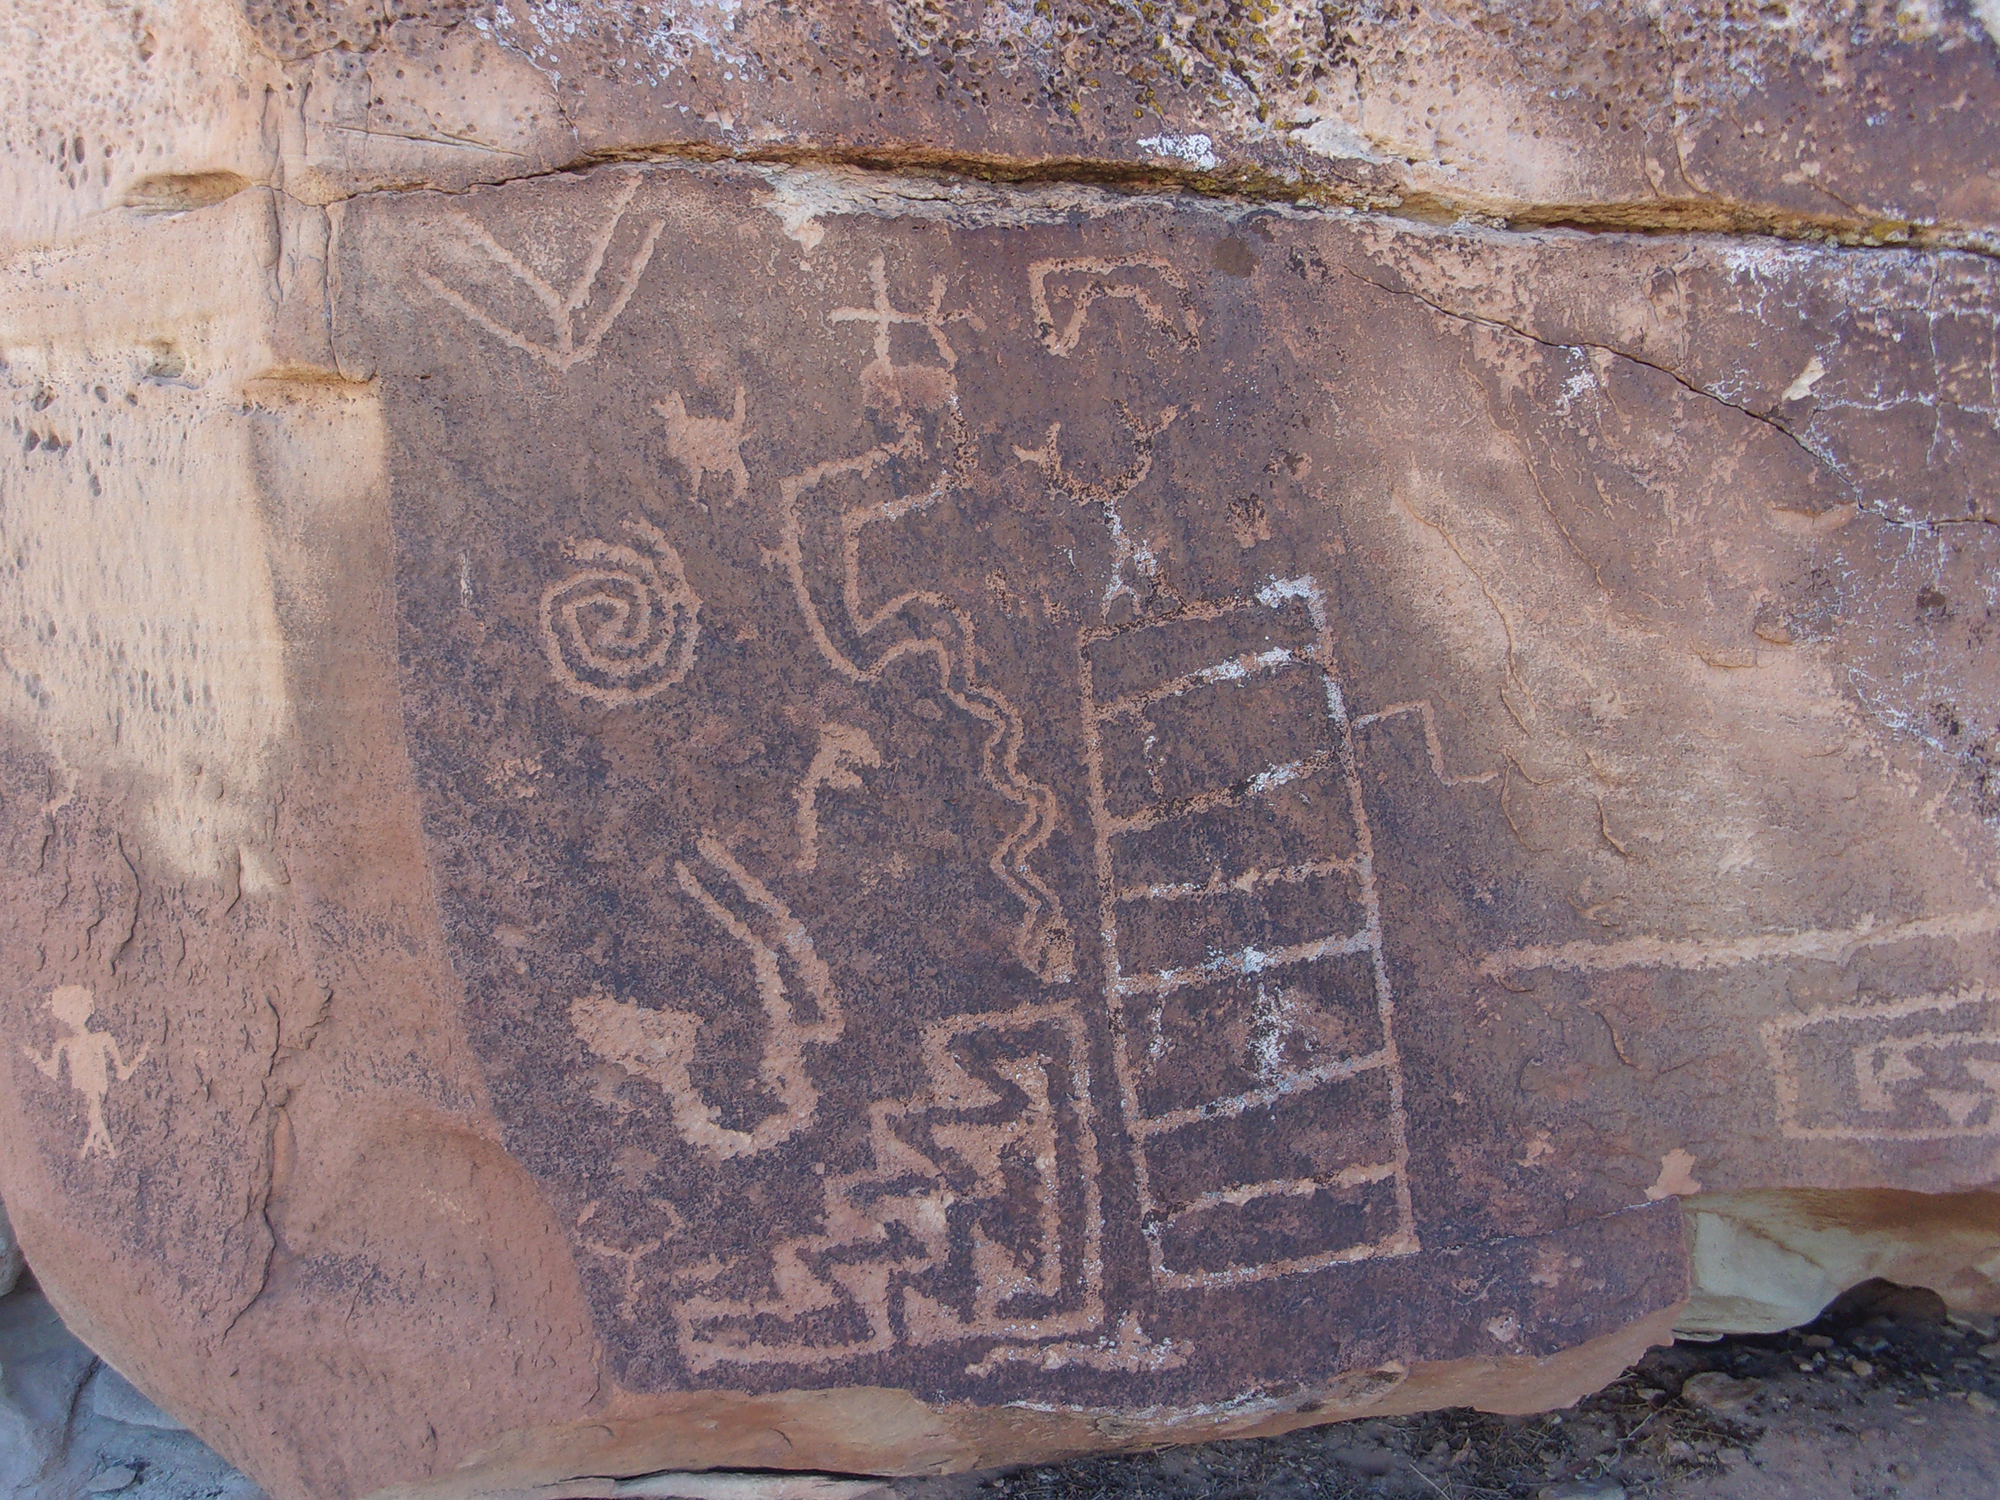 Petroglyph Rock - East Reef Trail